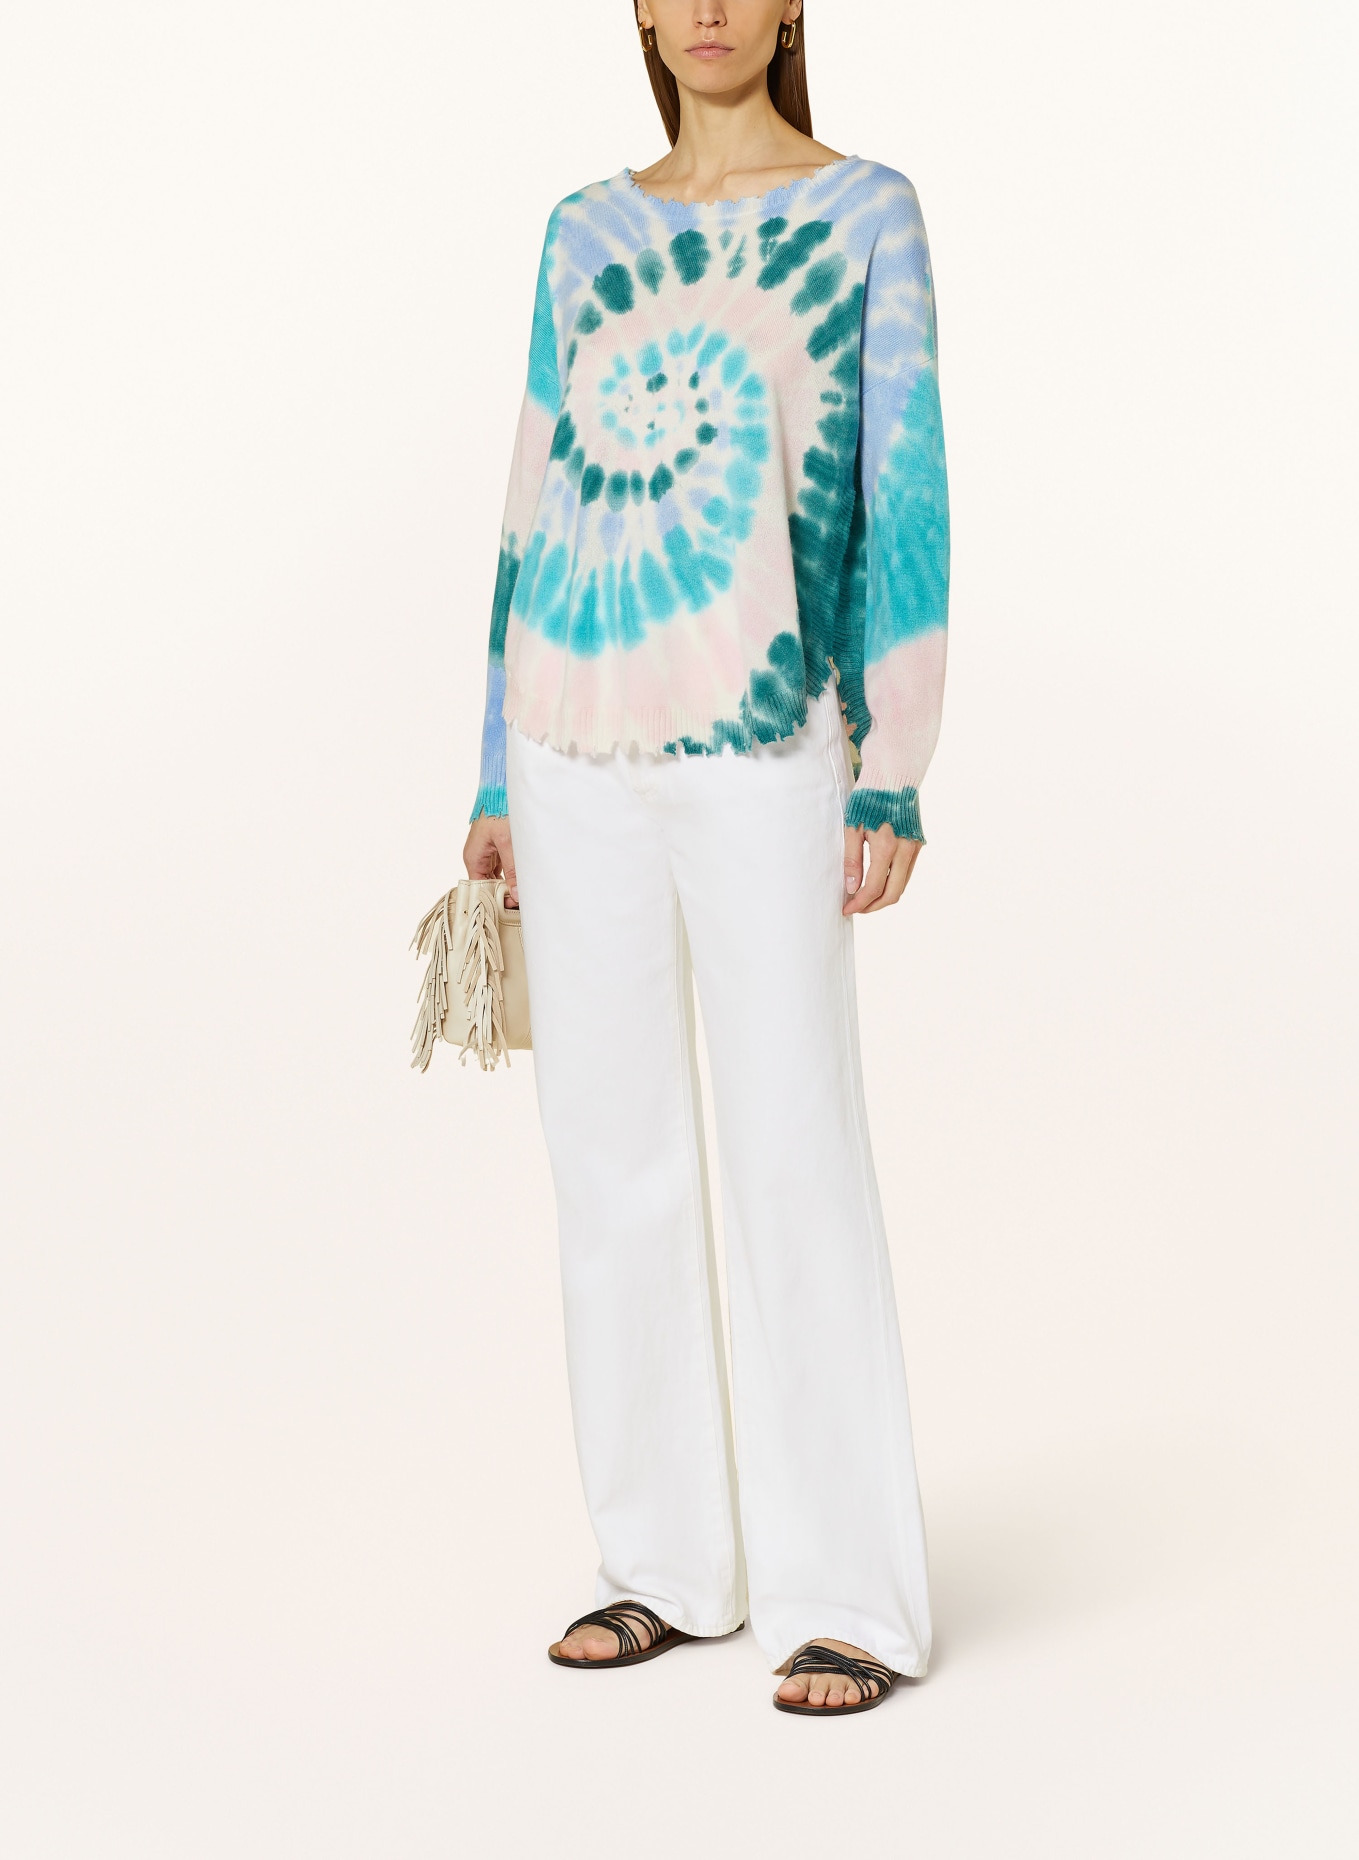 KUJTEN Cashmere sweater MELA SUNNY, Color: BLUE/ GREEN/ LIGHT PINK (Image 2)